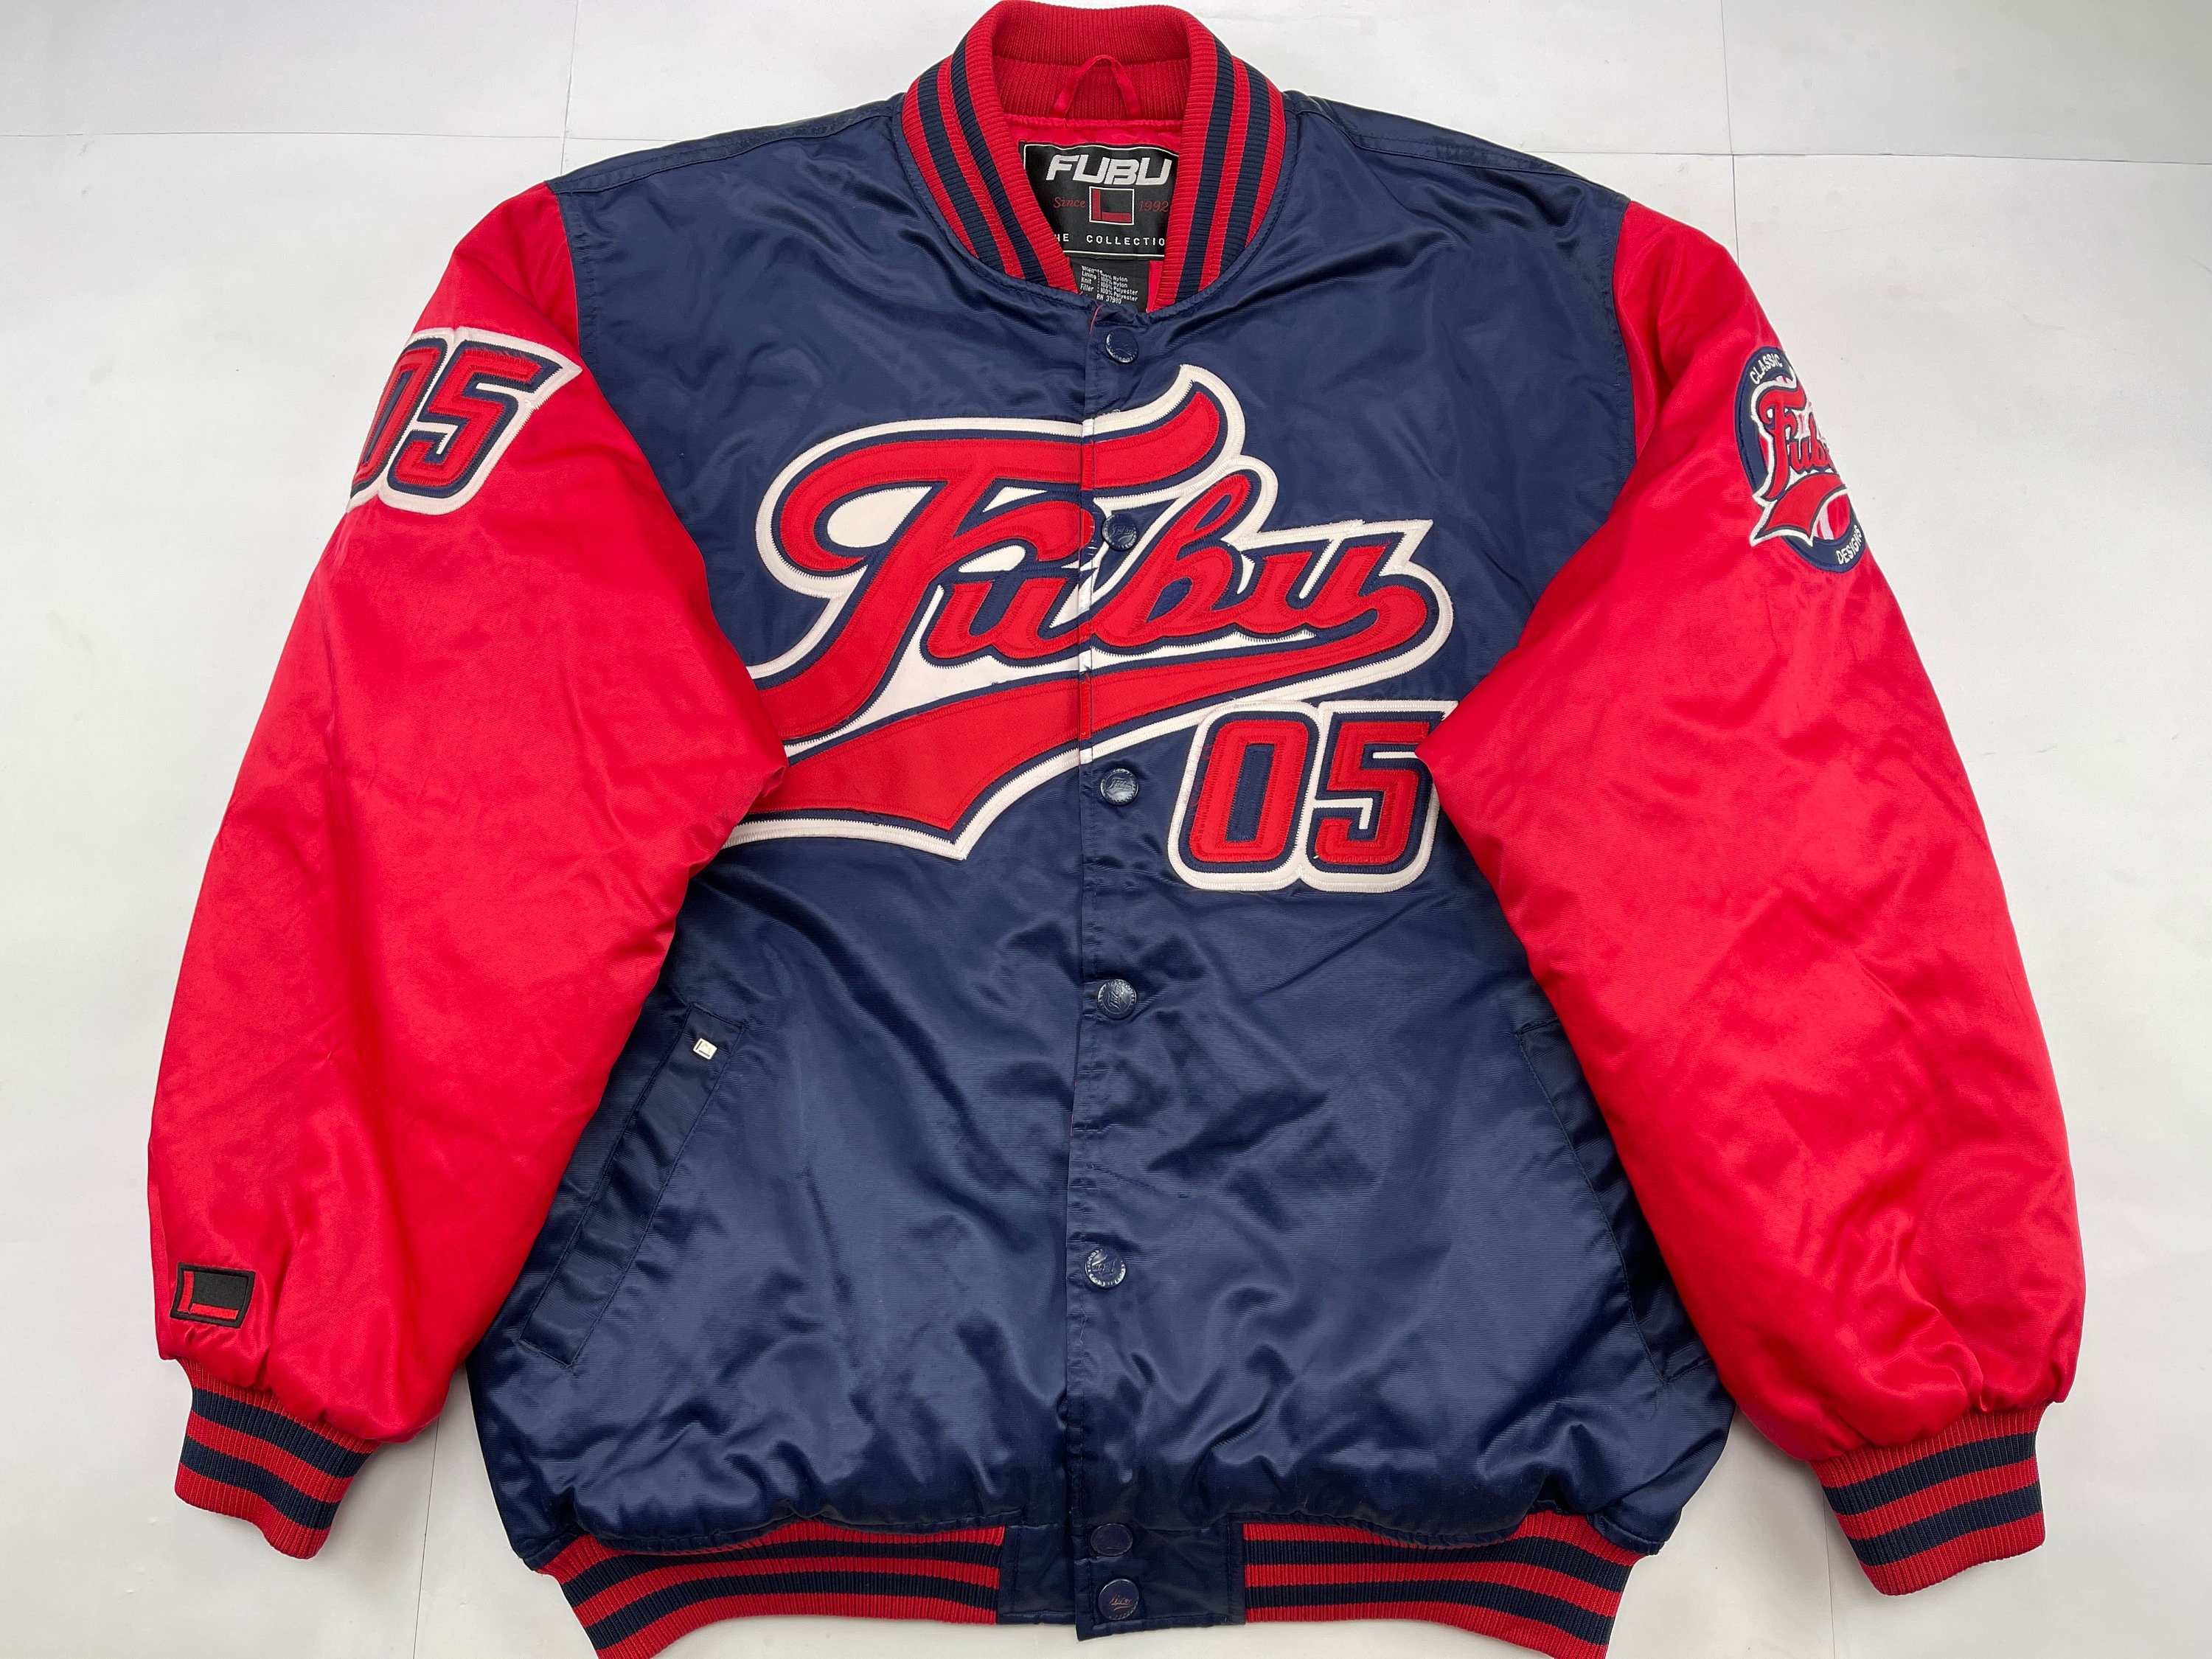 FUBU Jacket Red Vintage College Varsity Bomber 90s Hip Hop - Etsy